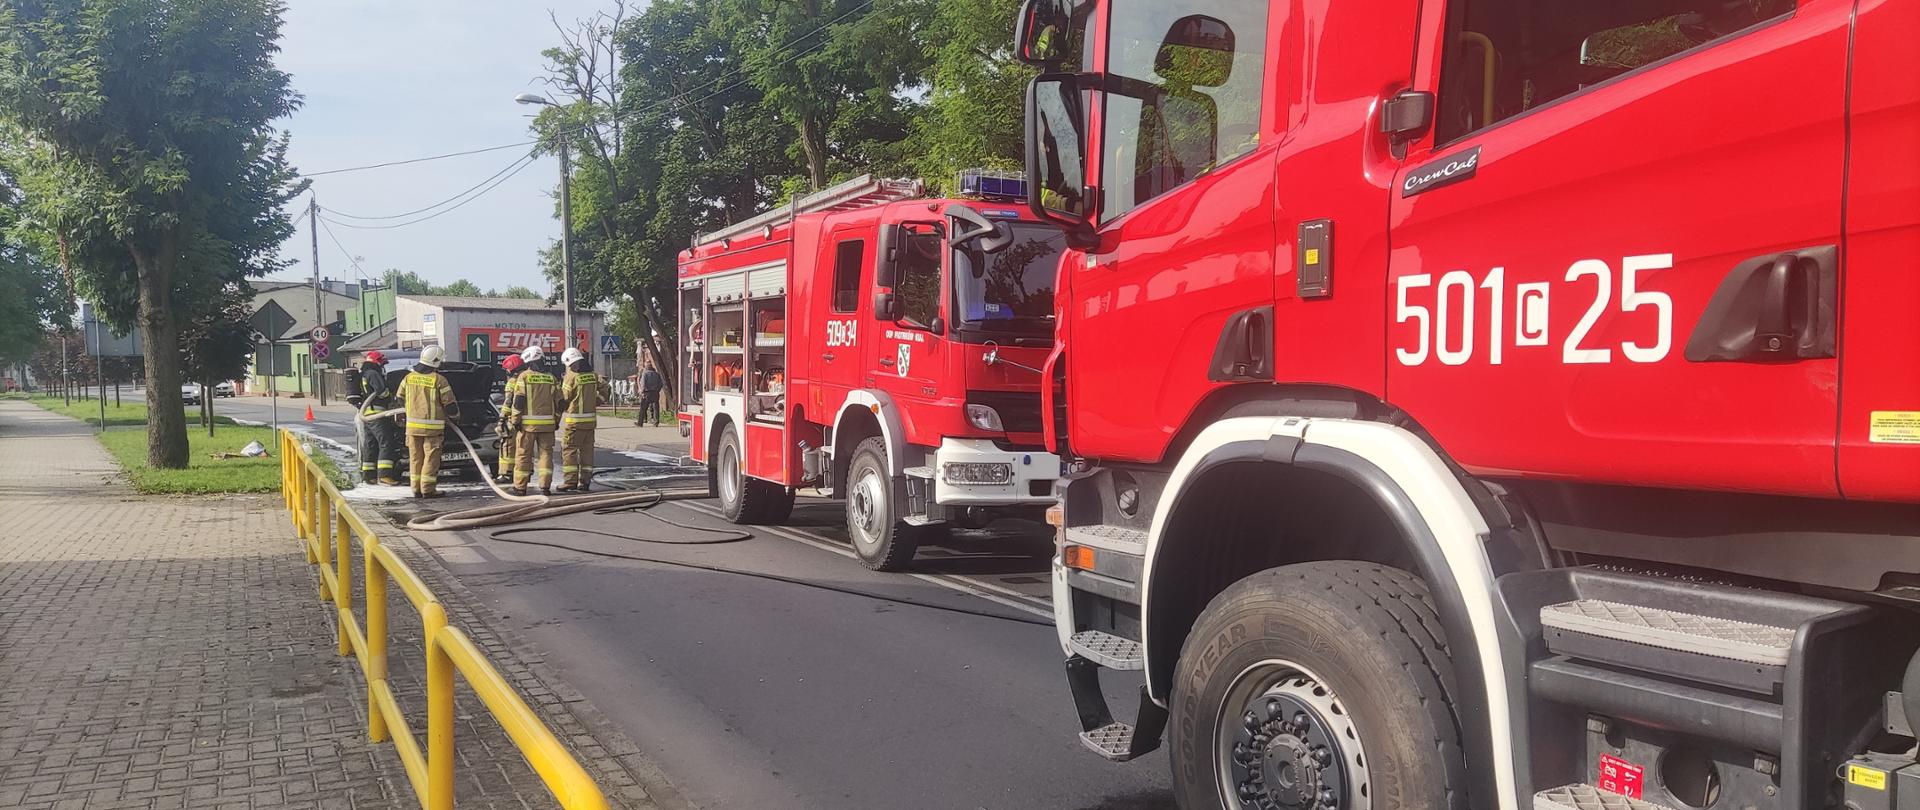 Zdjęcie przedstawia drogę wojewódzką, na której znajdują się pojazdy służb ratowniczych (dwa wozy straży pożarnej) strażaków podczas gaszenia pojazdu osobowego.